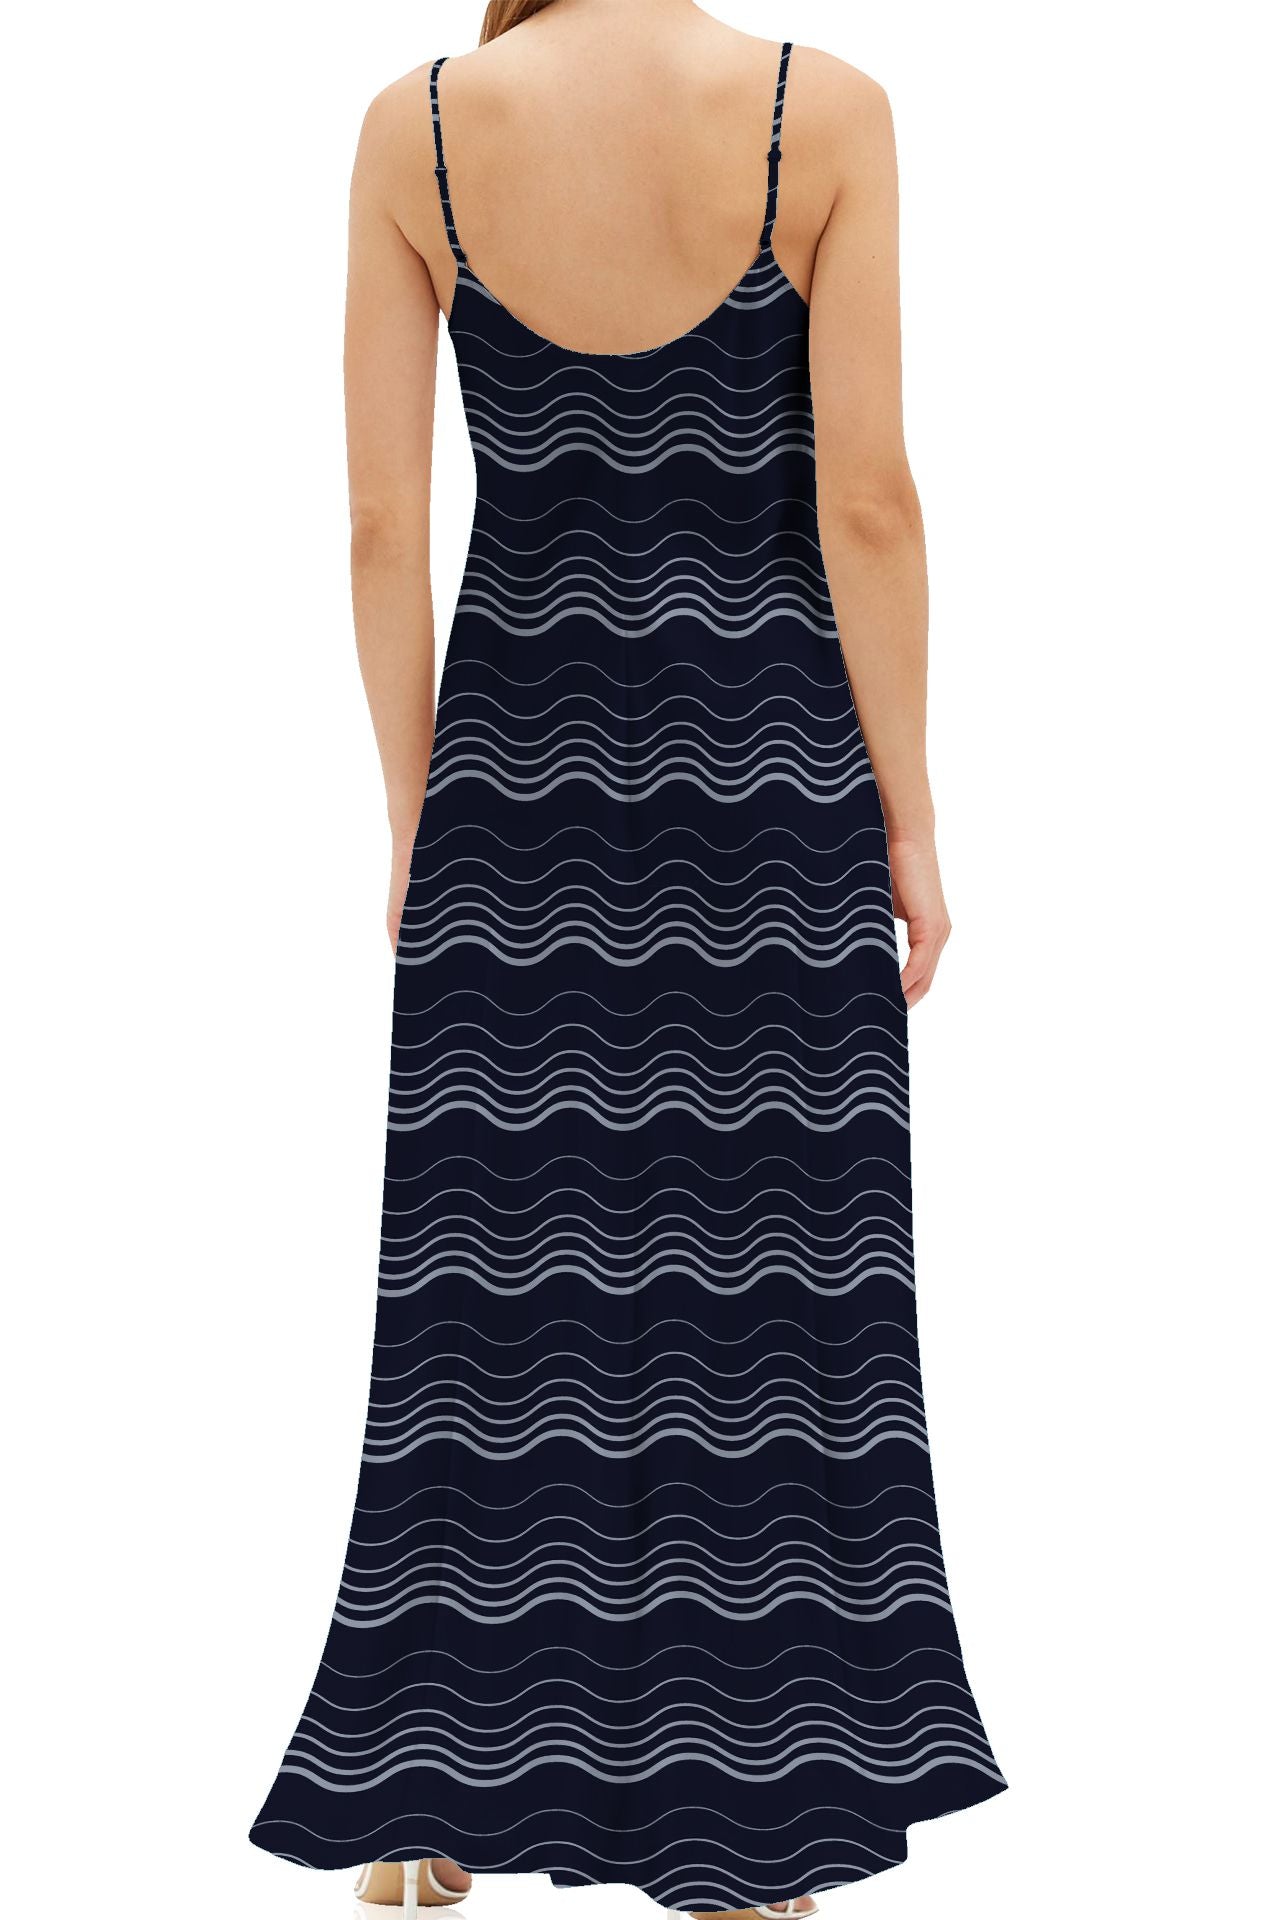 https://www.kylexshahida.com/cdn/shop/files/long-camisole-dress-Kyle-X-Shahida-long-slips-for-dresses-full-length-slip-dress.jpg?v=1701082153